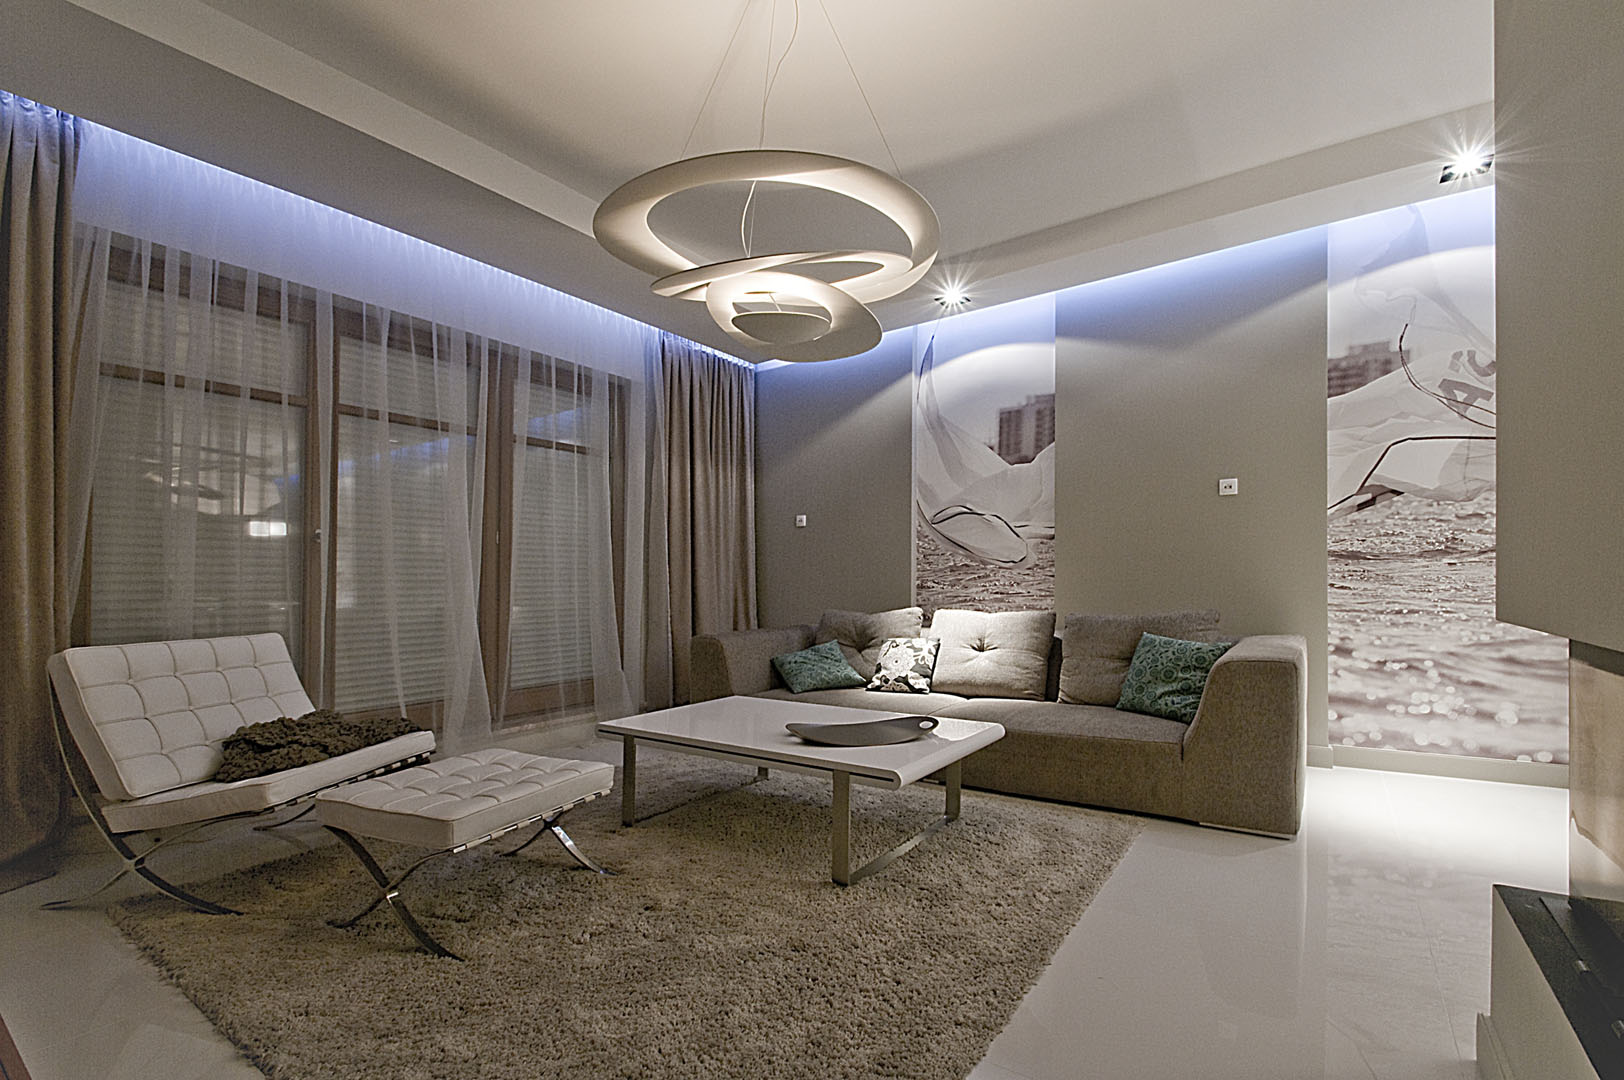 Dom prywatny w Gdyni 2010 - 02 futurystyczna lampa oświetlenie led sofa fotel dywan